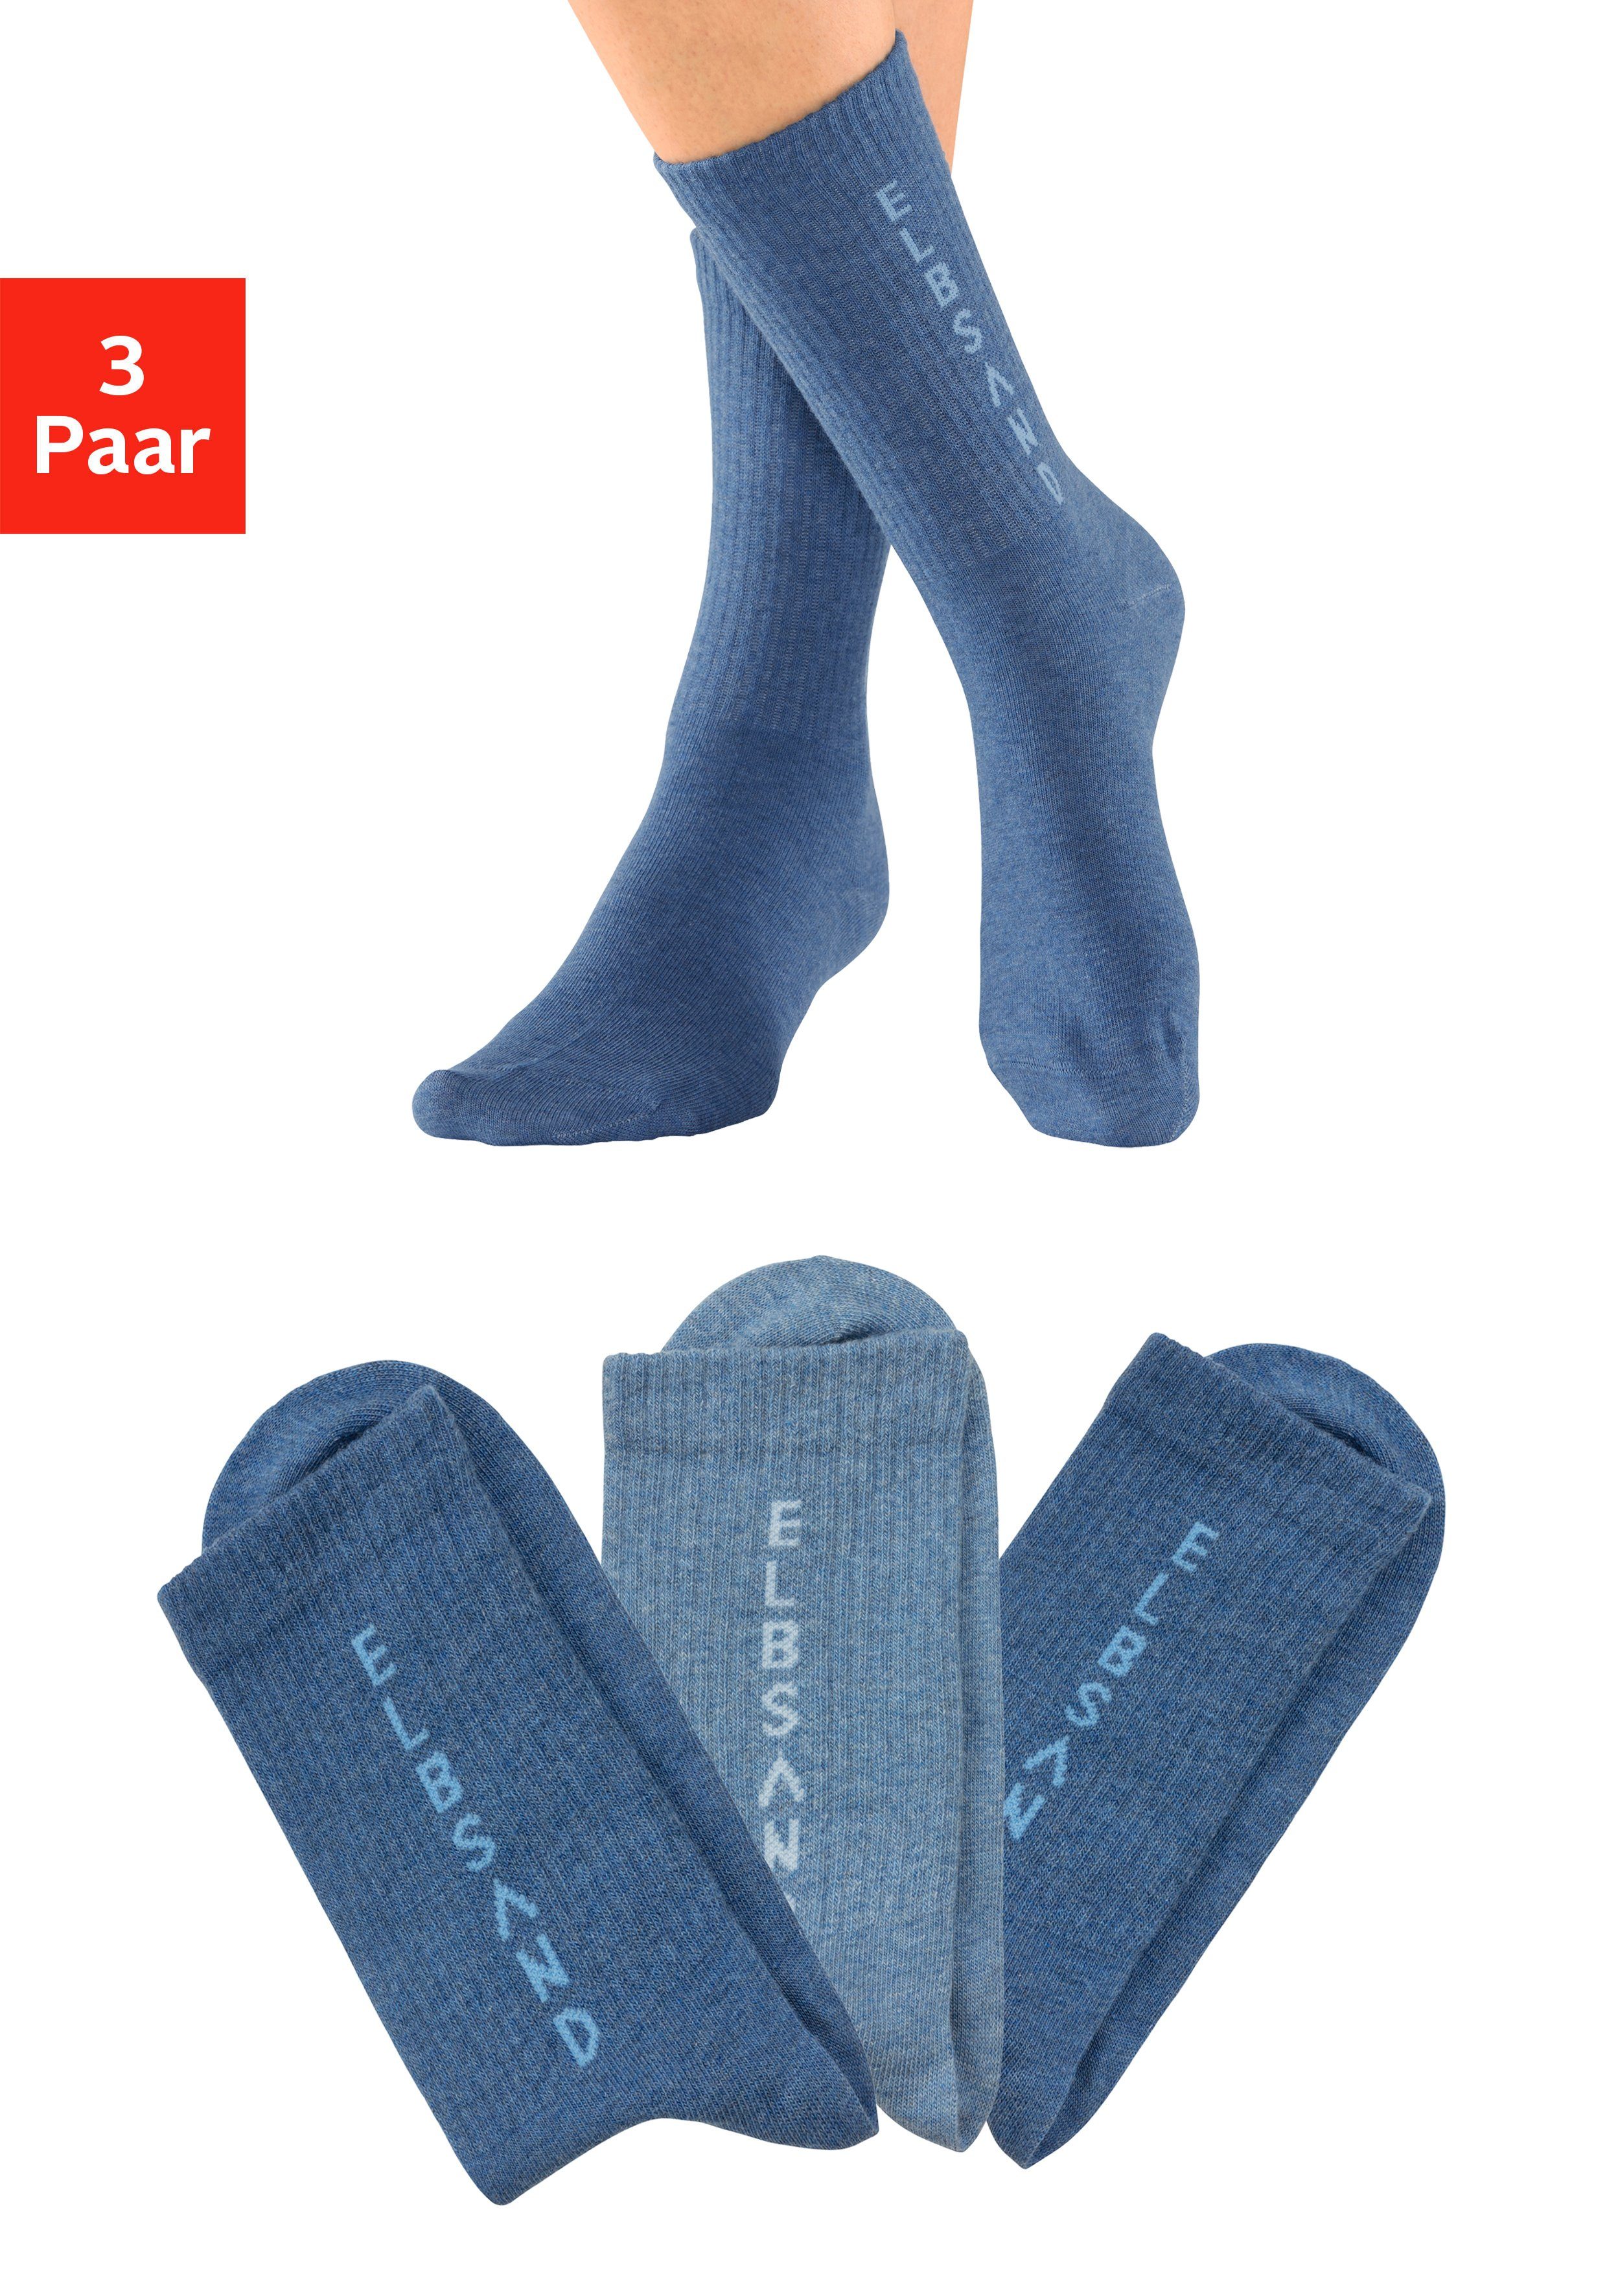 Elbsand Socken (3-Paar) mit eingestricktem Schriftzug 2x dunkel jeans meliert, 1x hell jeans meliert